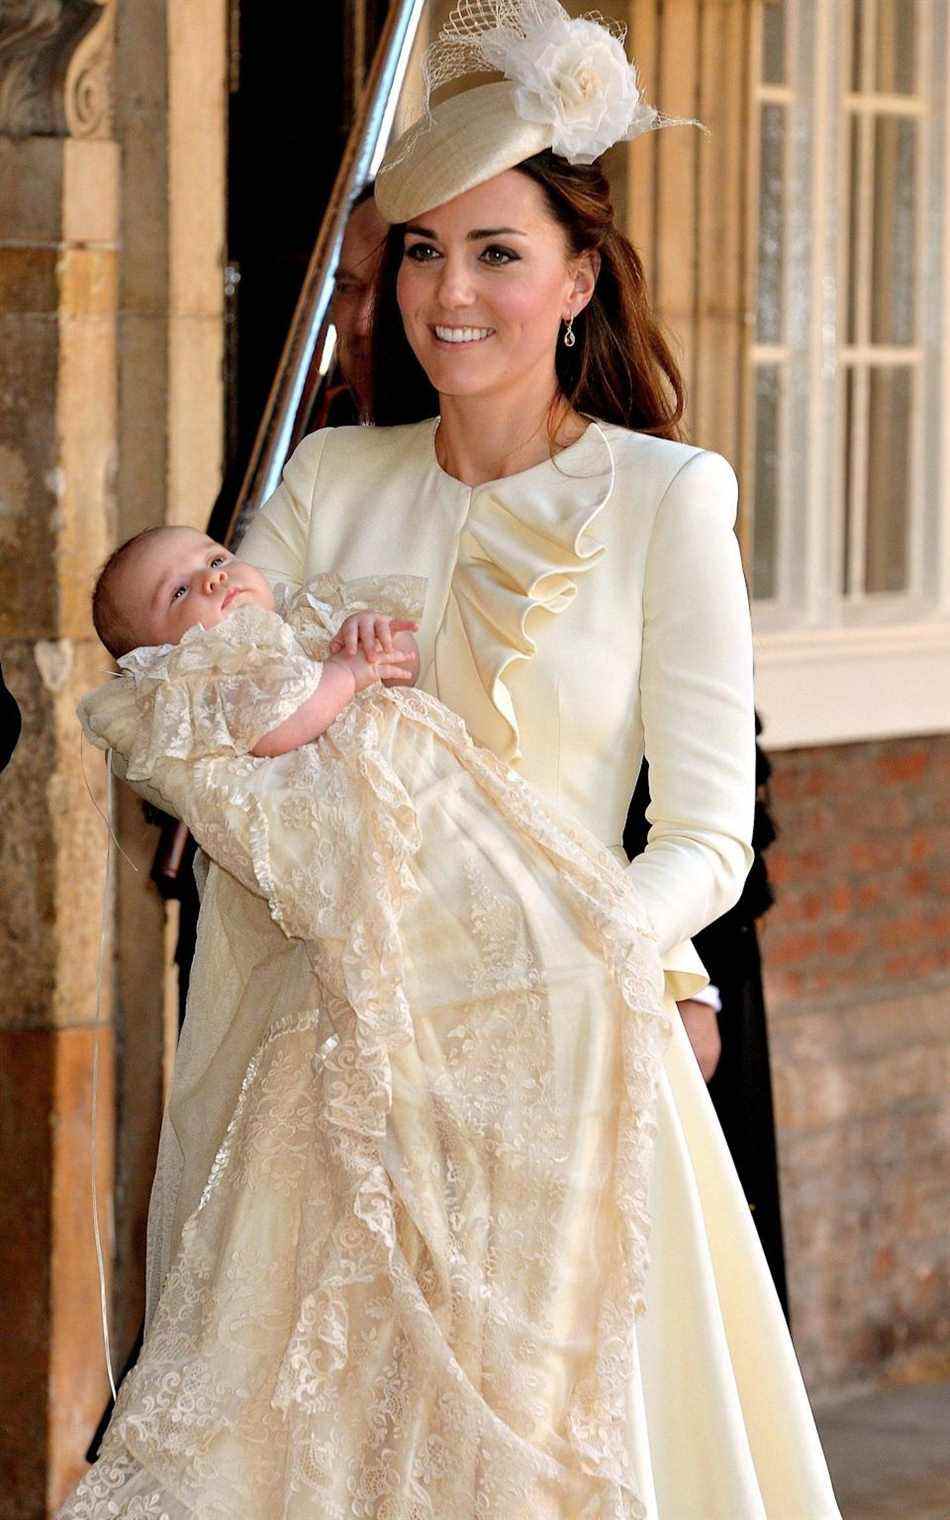 La robe a depuis été portée par le nouveau-né Prince George en 2013, la princesse Charlotte en 2015, le prince Louis en 2018 et Archie Mountbatten-Windsor en 2019 - JOHN STILLWELL